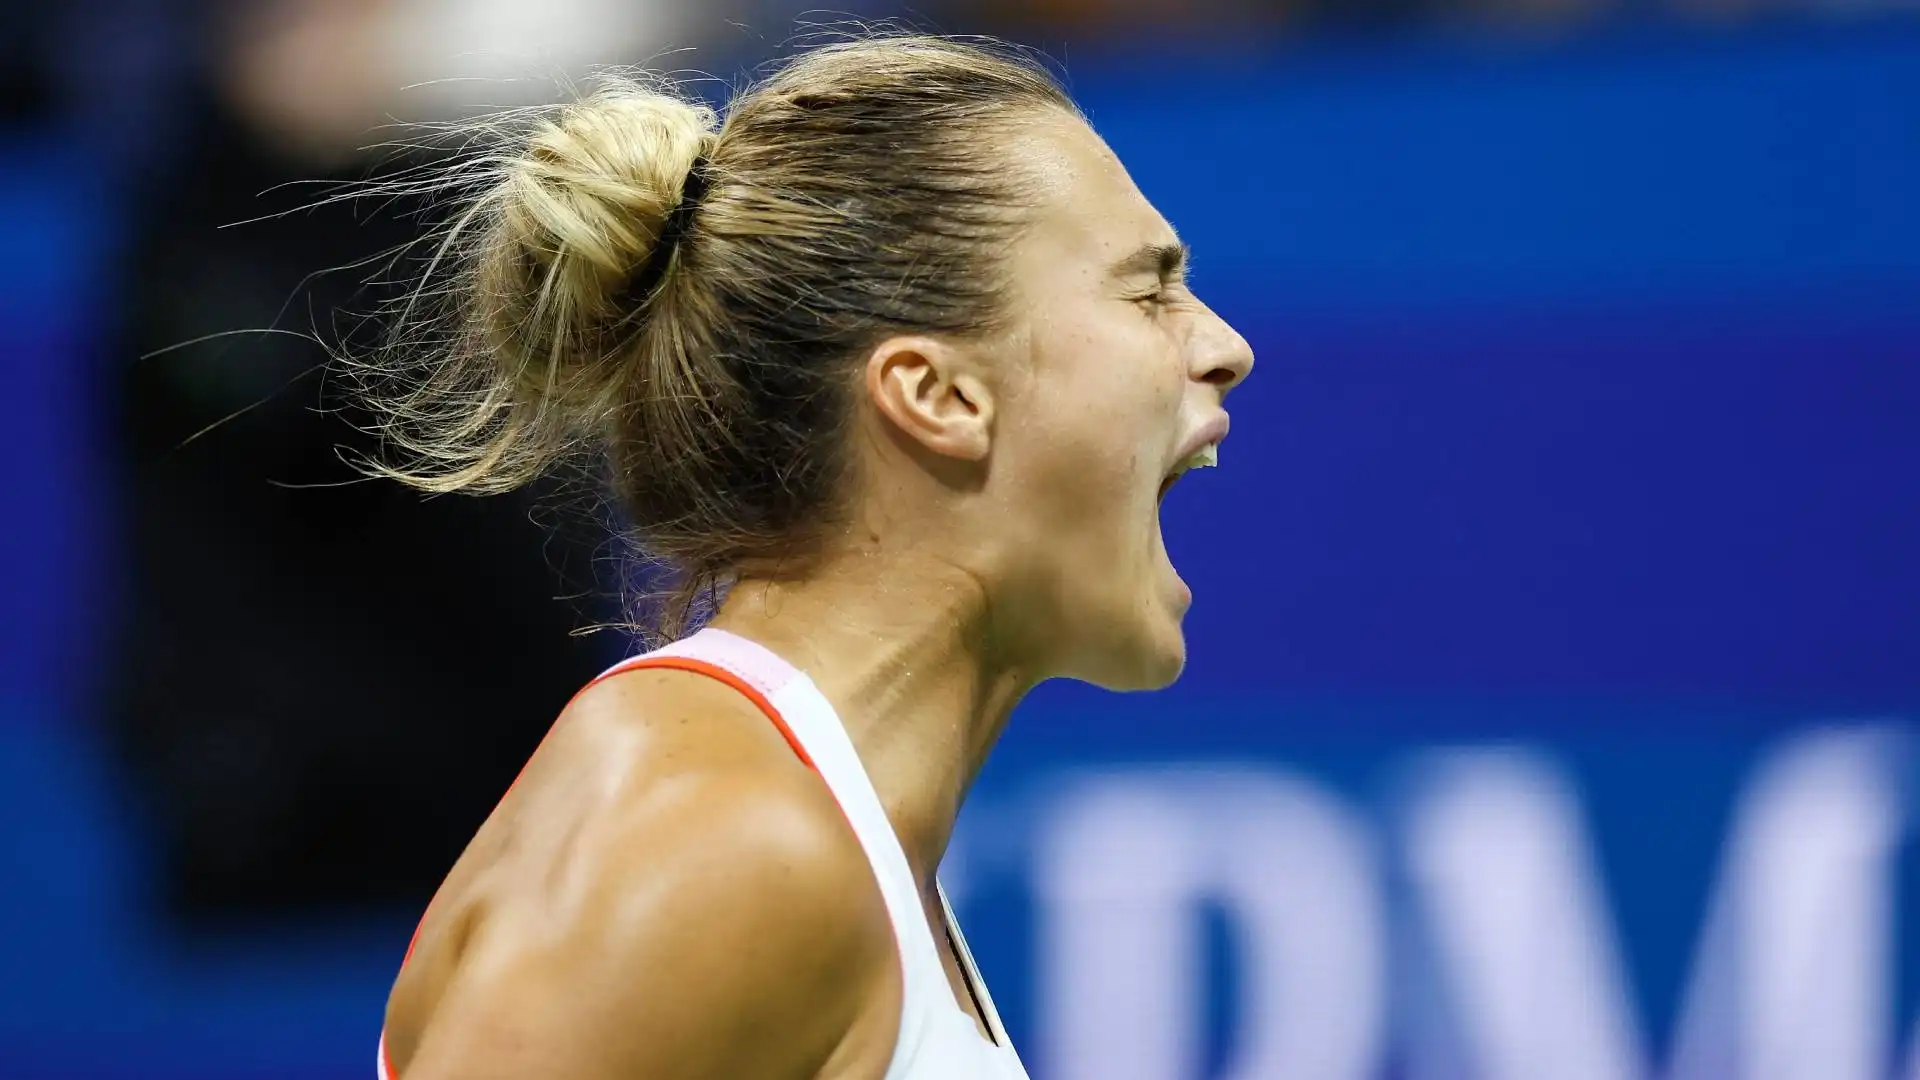 Nei quarti di finale affronterà la tennista ceca Karolina Pliskova, che ha battuto in tre set Victoria Azarenka